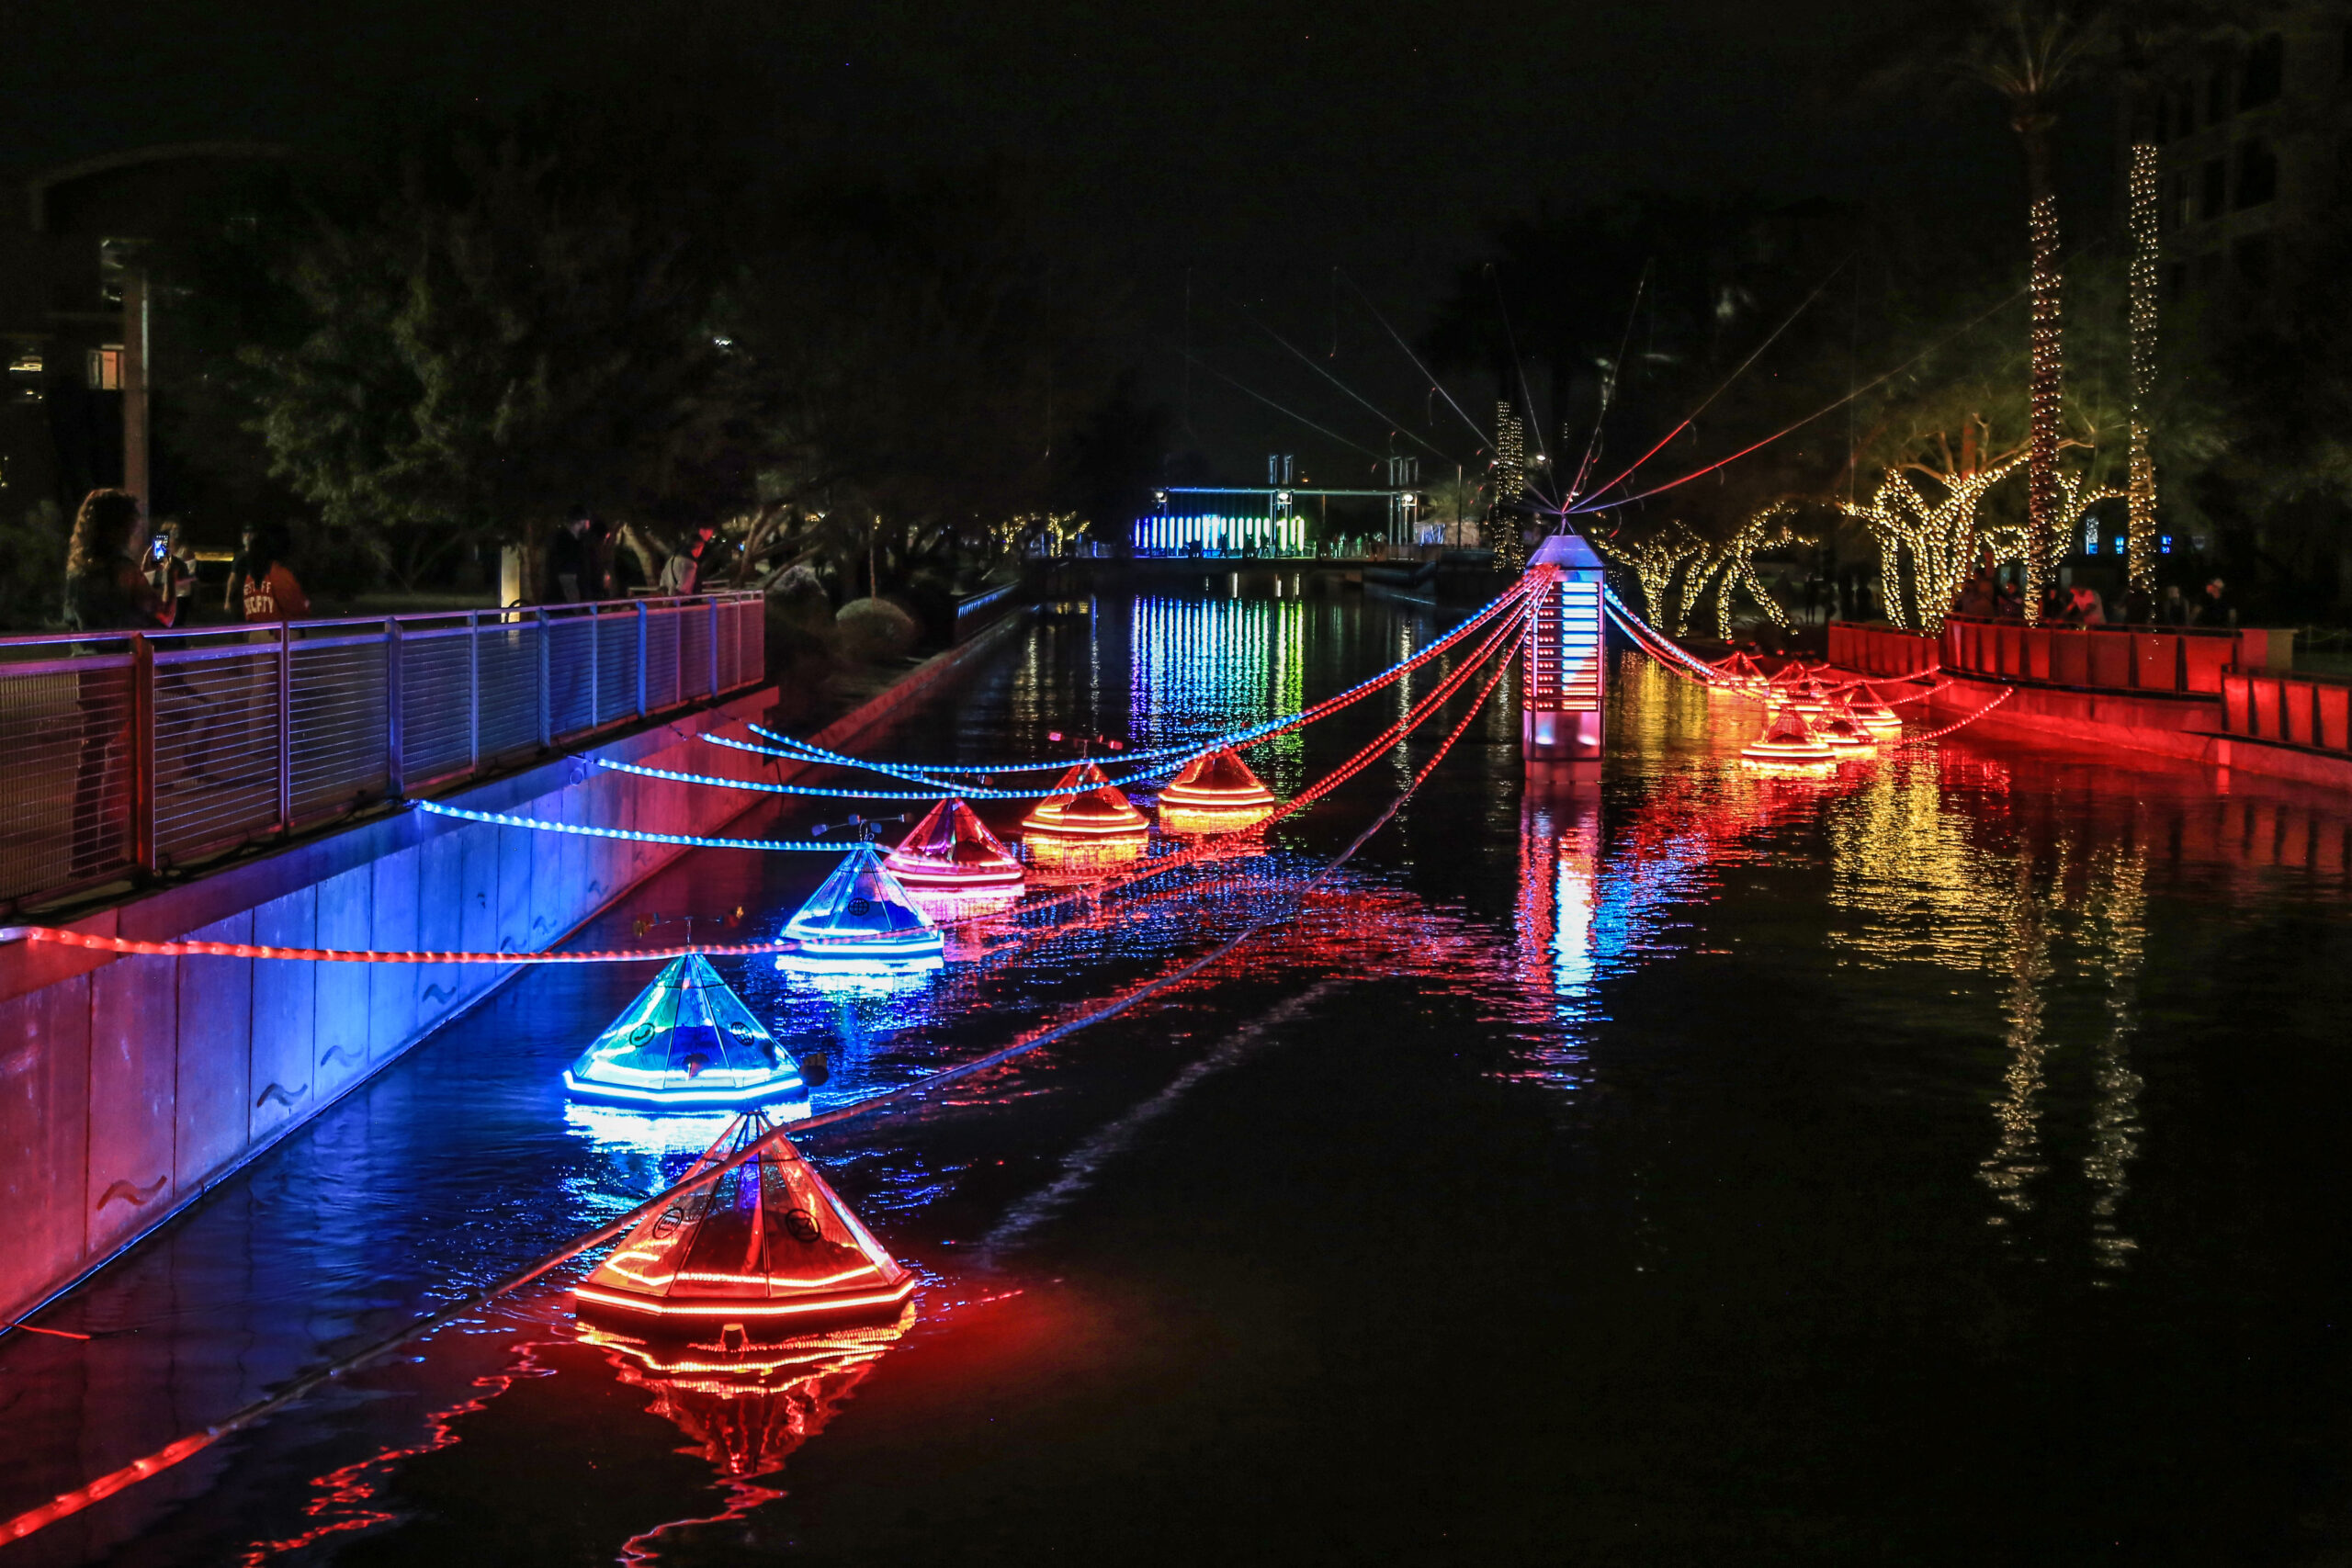 Canal Convergence Water + Art + Light